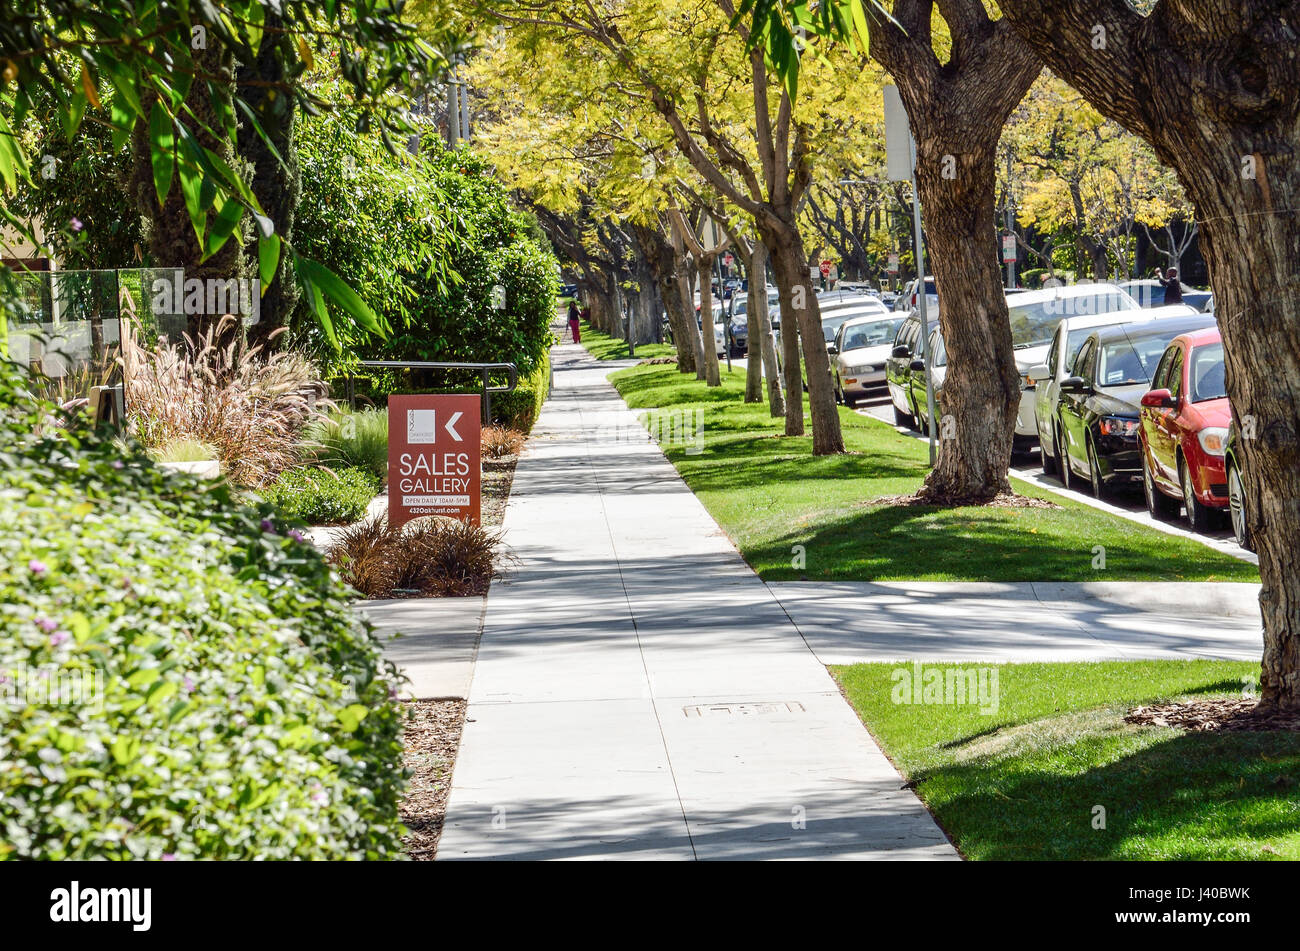 Los Angeles, USA - 9. März 2014: Bürgersteig auf Straße in der Innenstadt von LA in Beverly Hills mit Wohnhäusern und Bäumen Verkaufsgalerie Zeichen Stockfoto